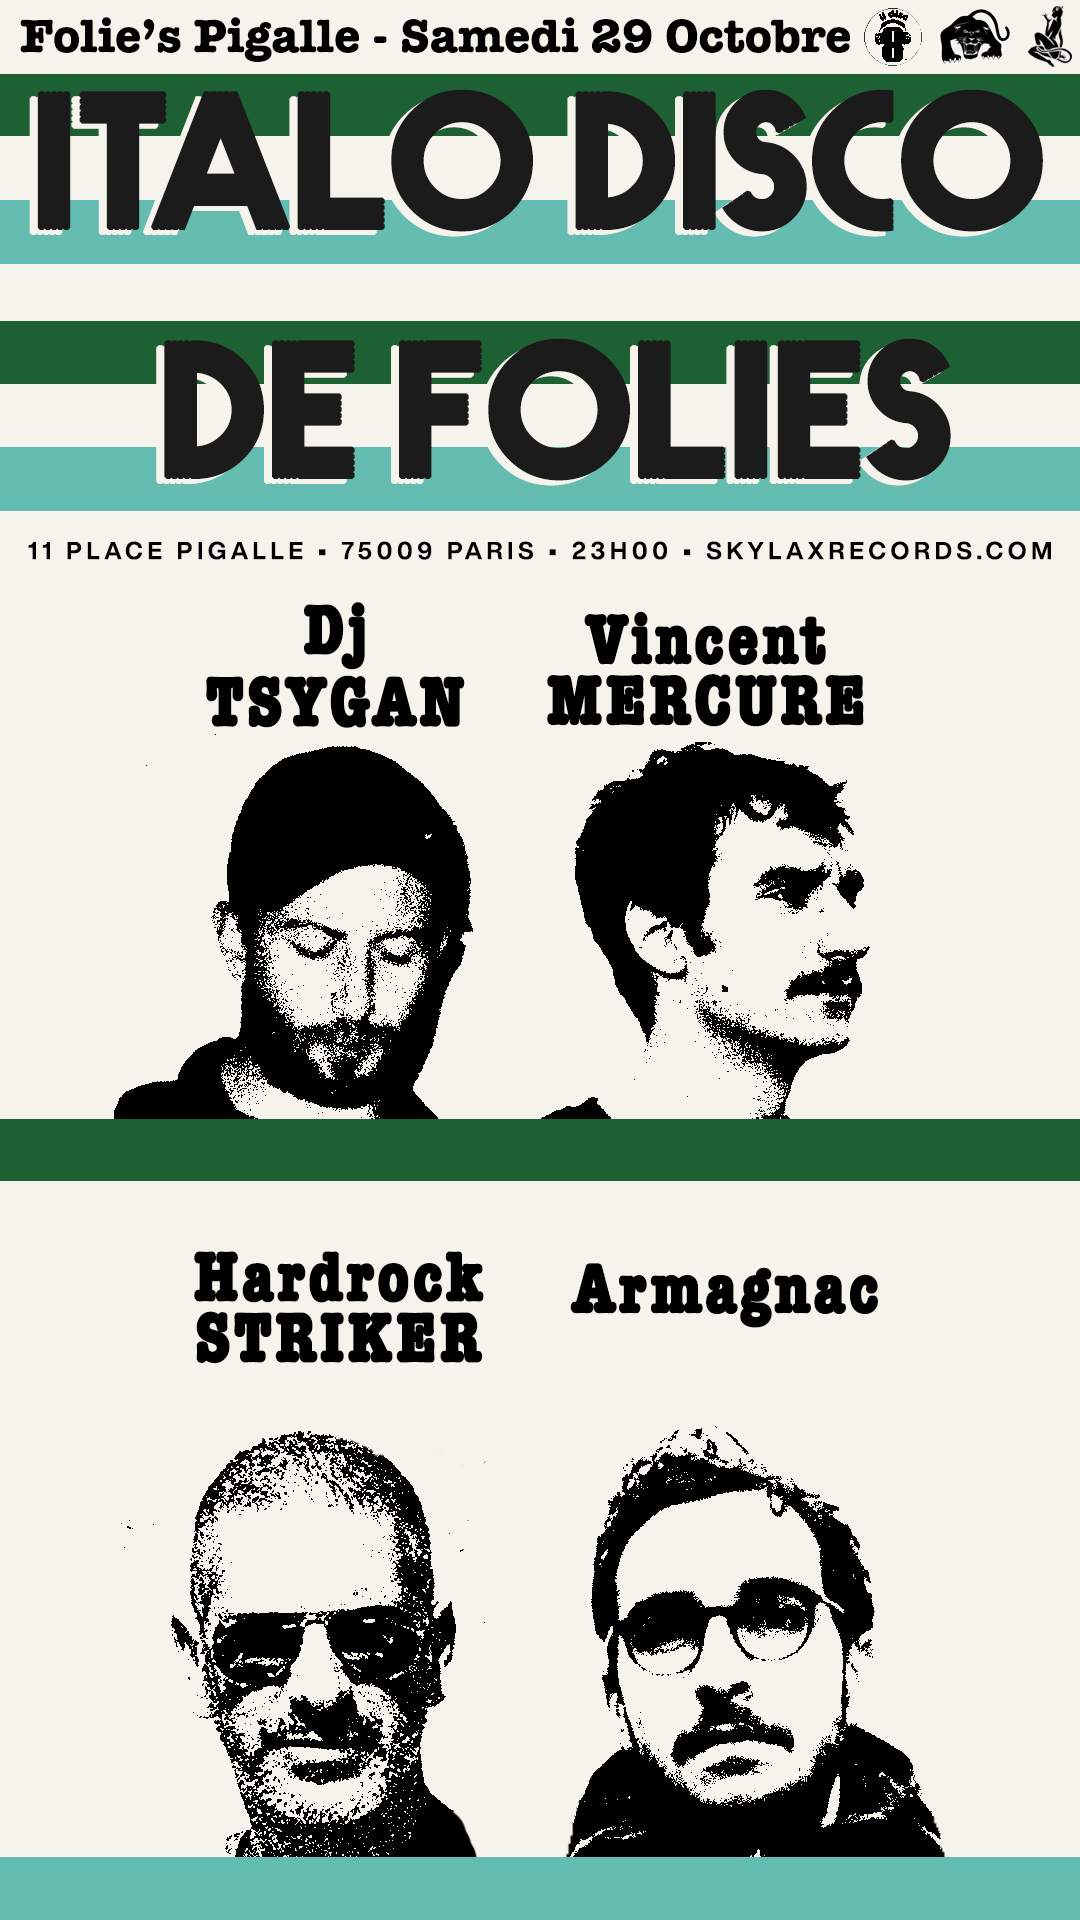 Italo Disco de Folies with Hardrock Striker, DJ Tsygan, Armagnac & Vincent Mercure - Página trasera